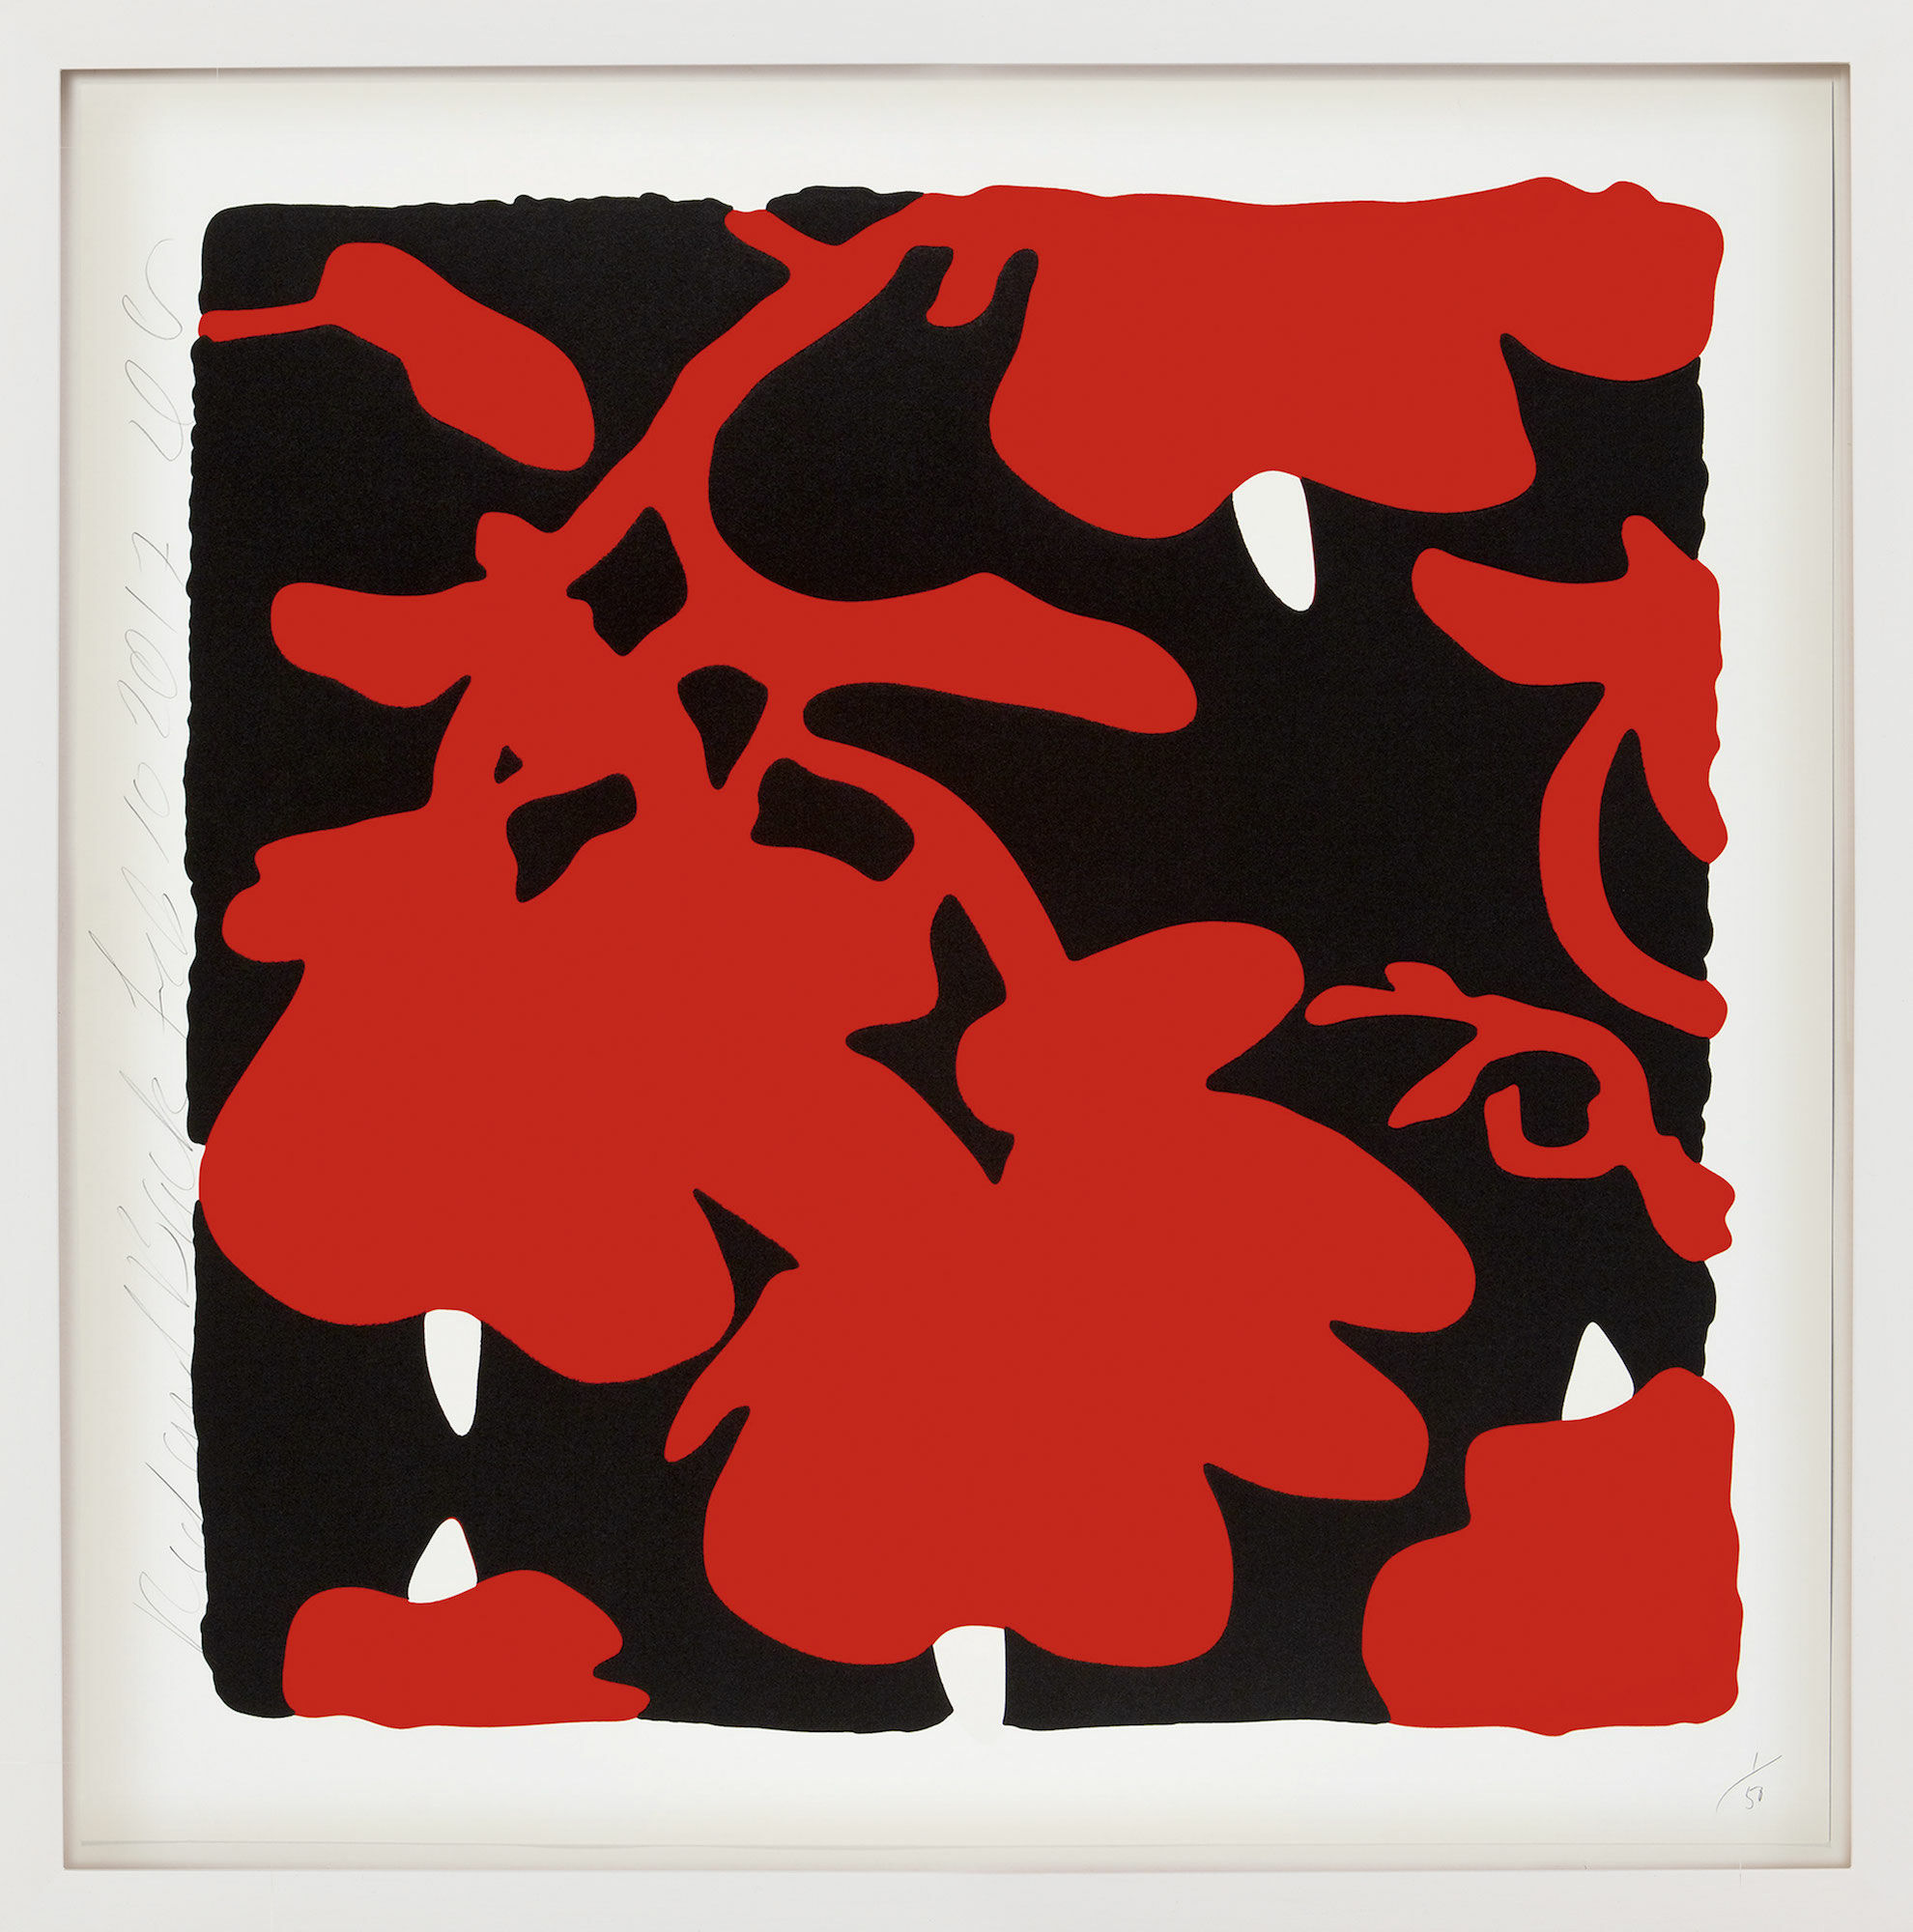 Tableau "Fleurs de lanterne - Rouge et noir" (2017) von Donald Sultan